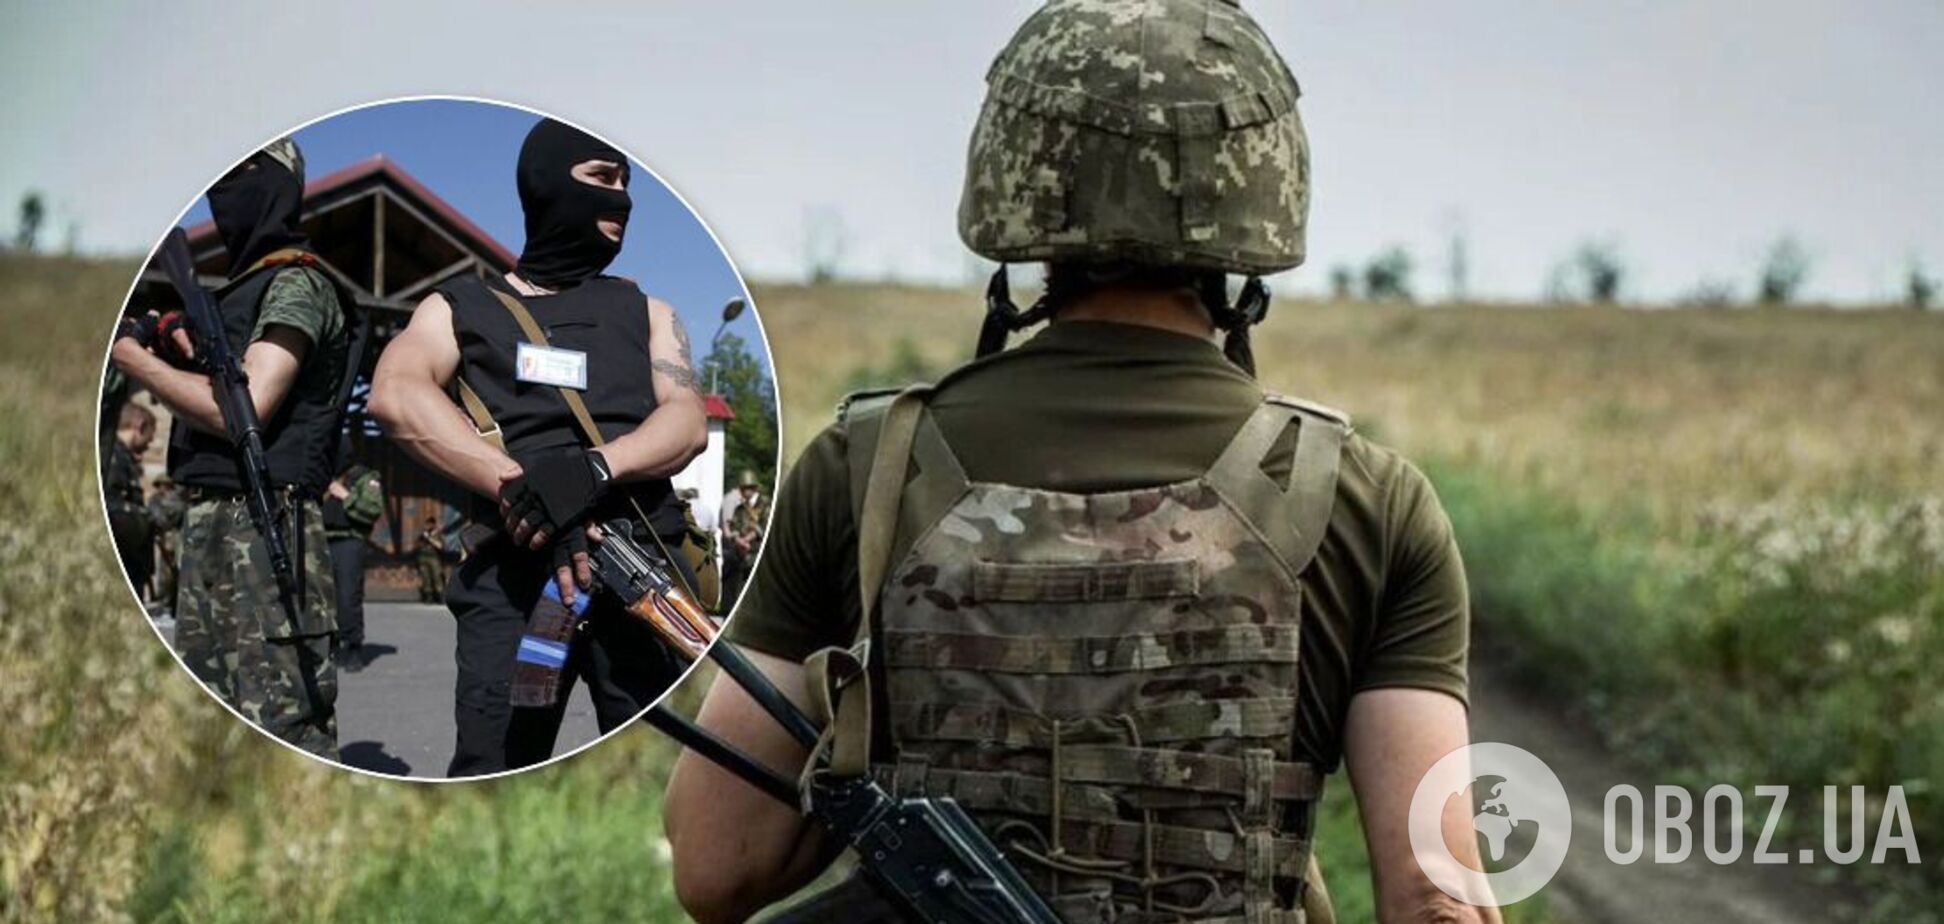 Террористы на Донбассе открыли огонь по ВСУ: в ООС сообщили о нарушении перемирия